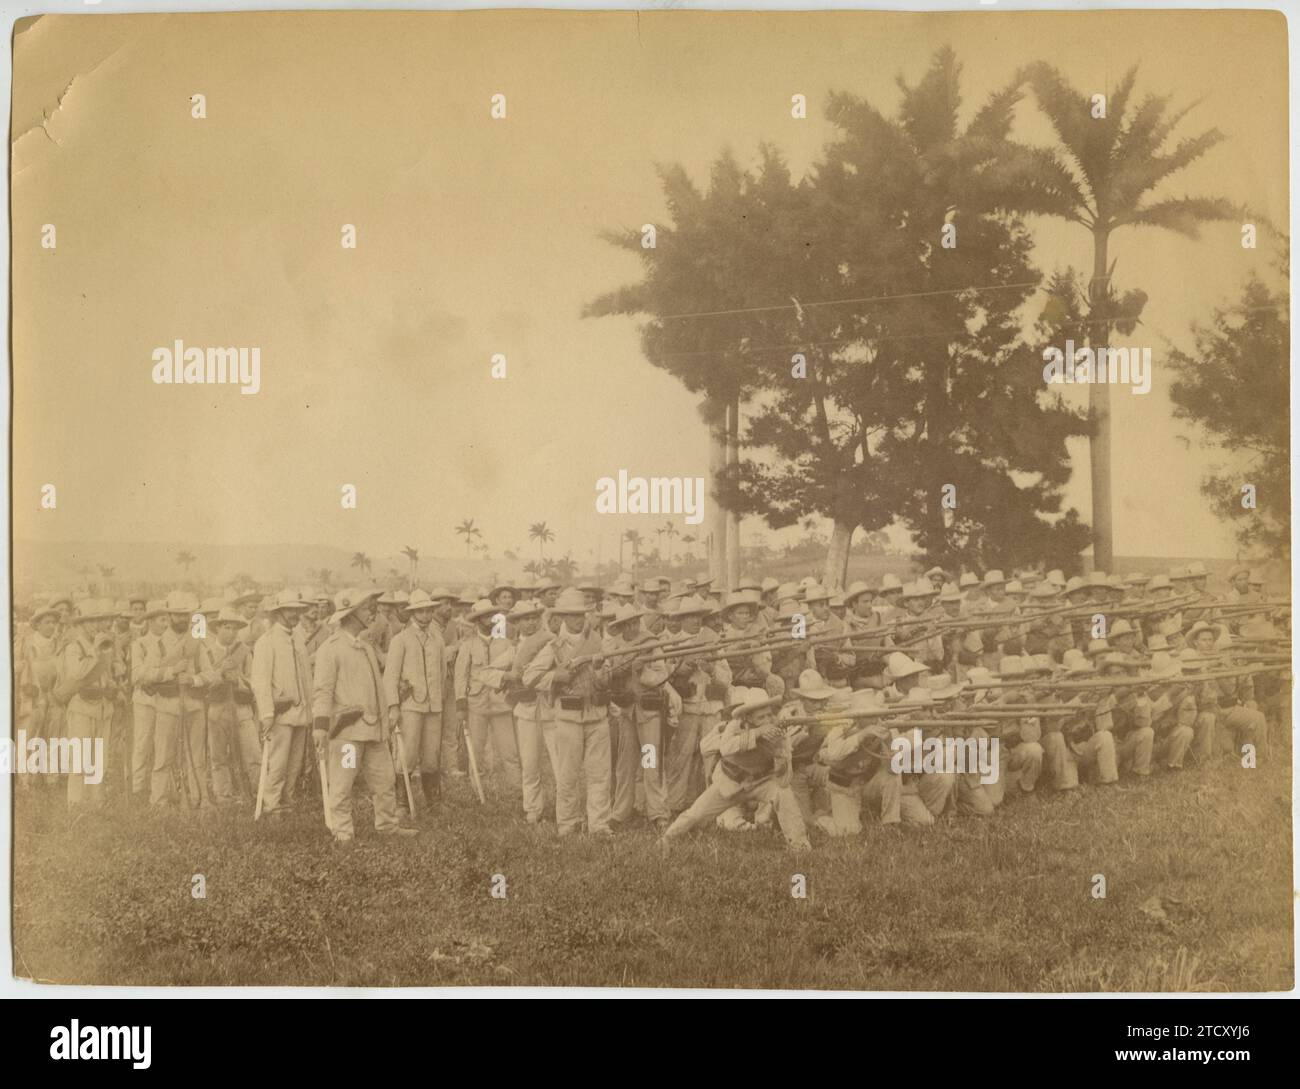 Kuba, Juni 1896. Kubanischer Krieg. Eine Infanteriekompanie, die ihre Feuerkraft zeigt. Quelle: Album/Archivo ABC Stockfoto